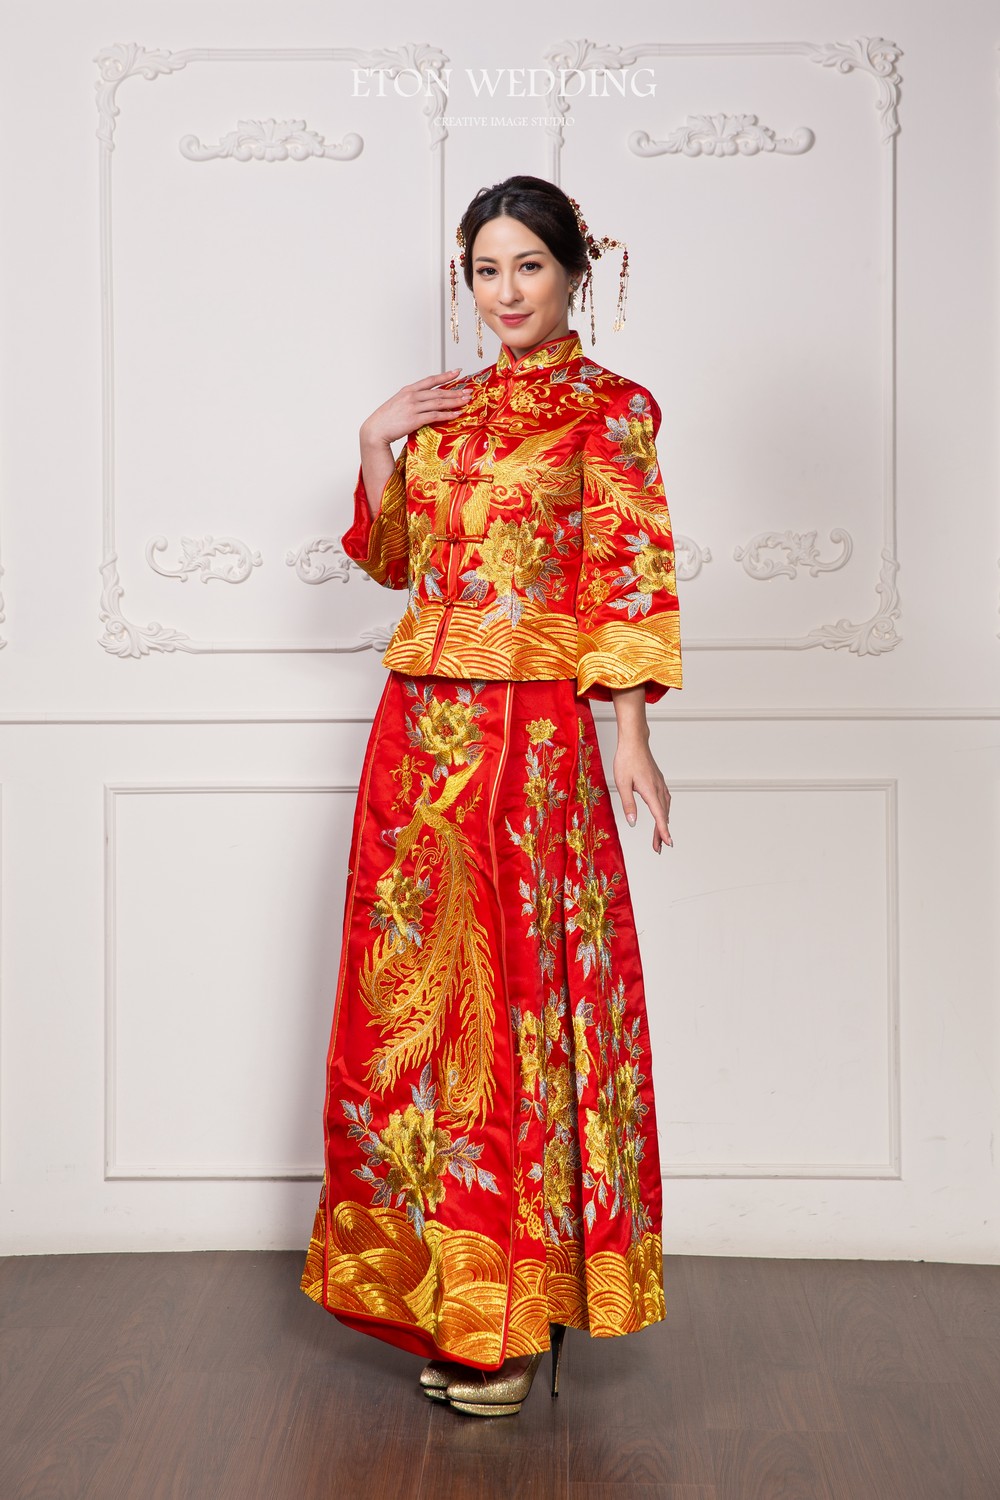 中式禮服,中式婚紗,秀禾服,龍鳳褂,旗袍婚紗,改良式旗袍